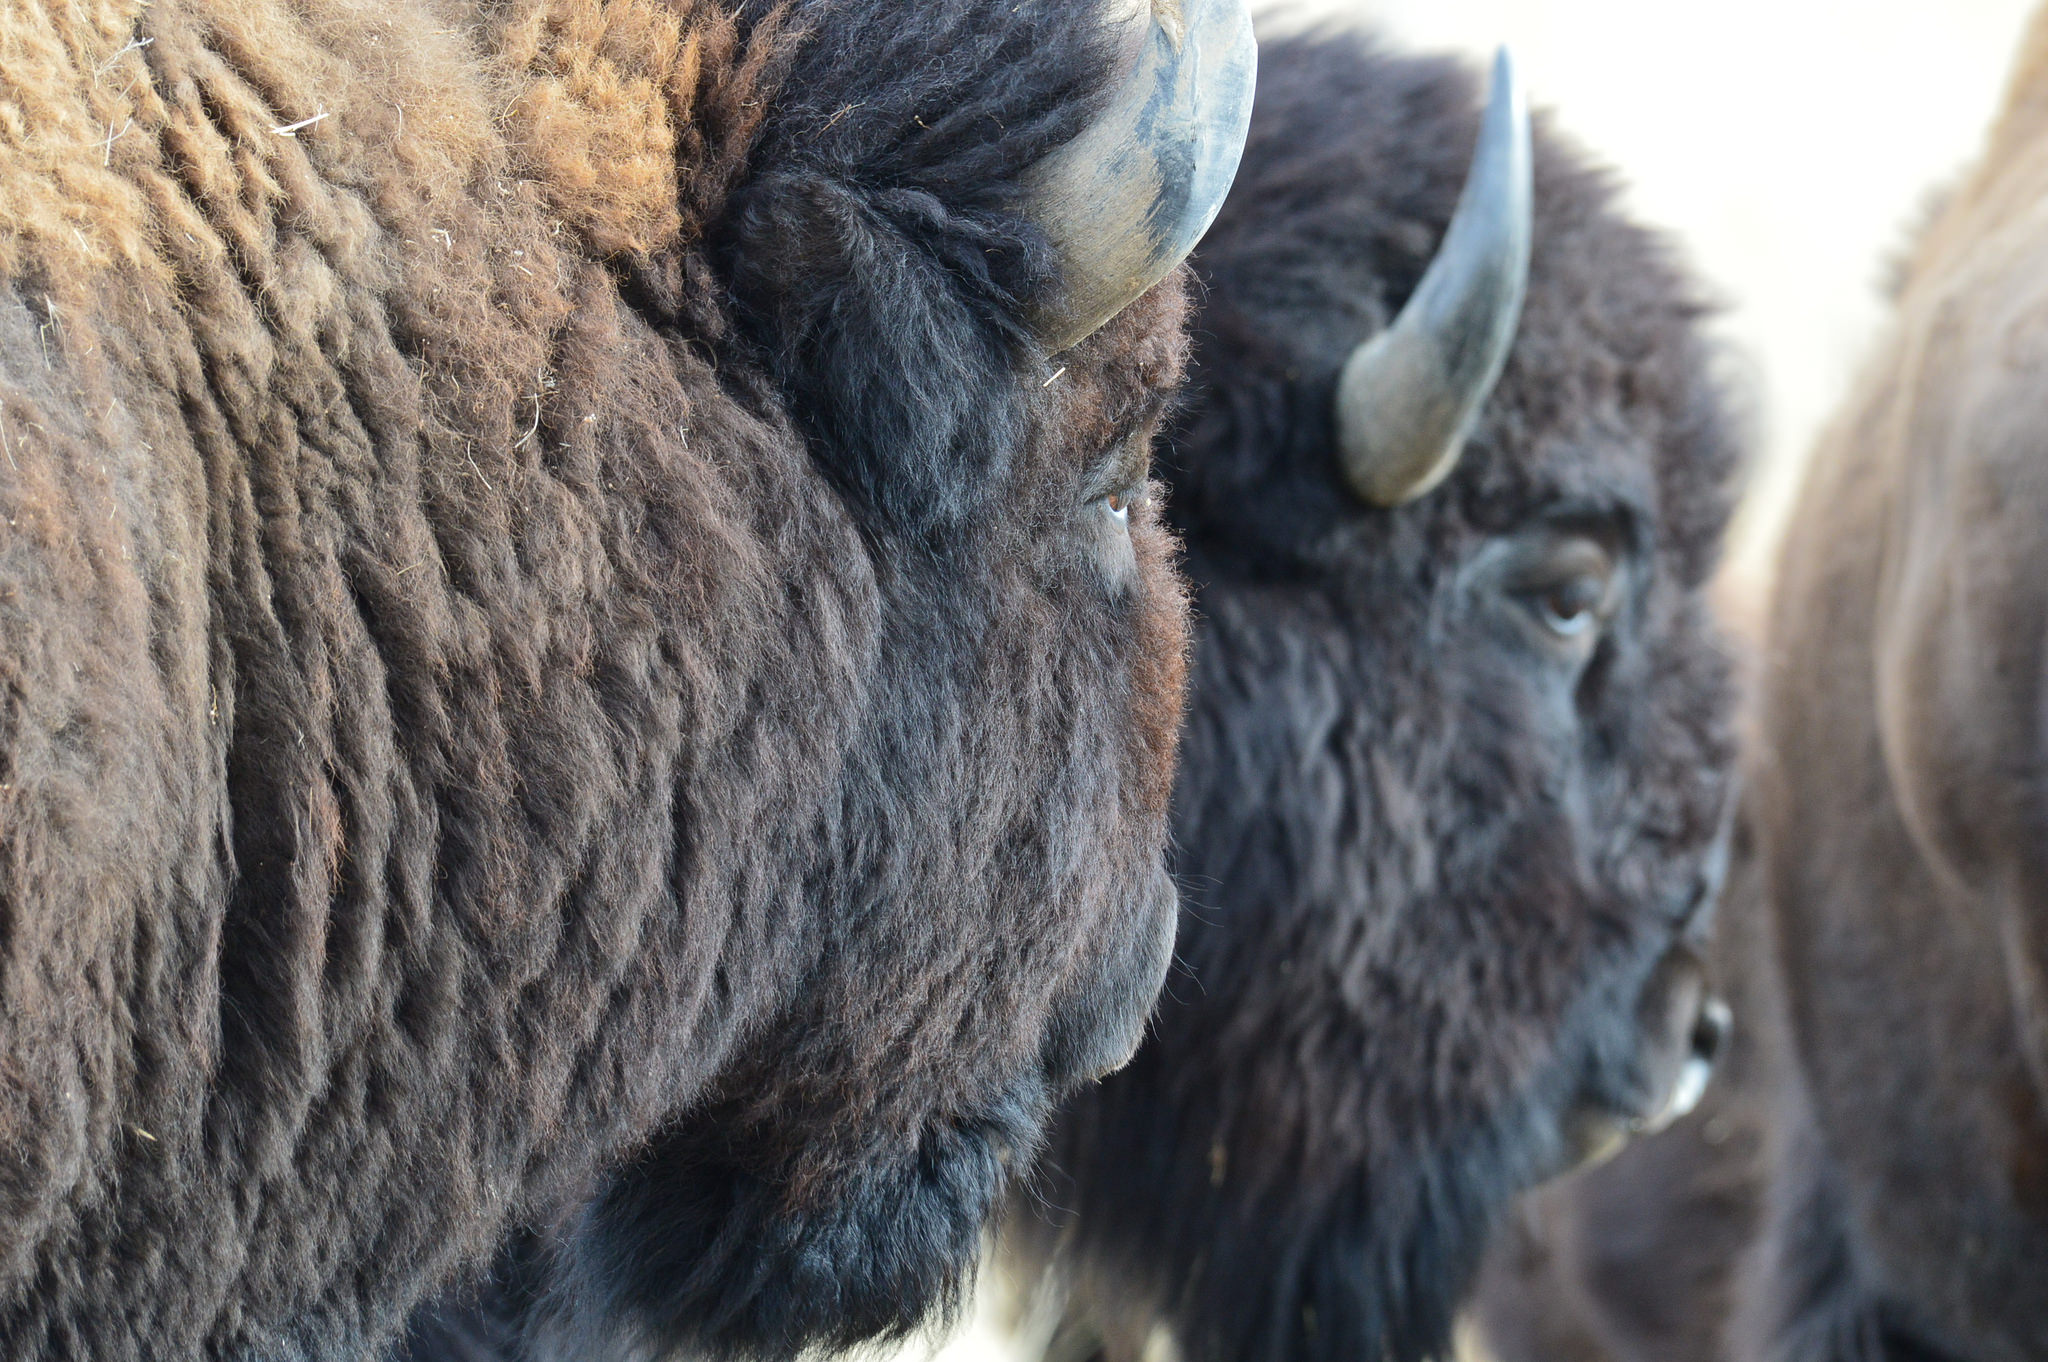 Bison at Rocky Mountain Arsenal National Wildlife Refuge. Credit: Ryan Moehring / USFWS.